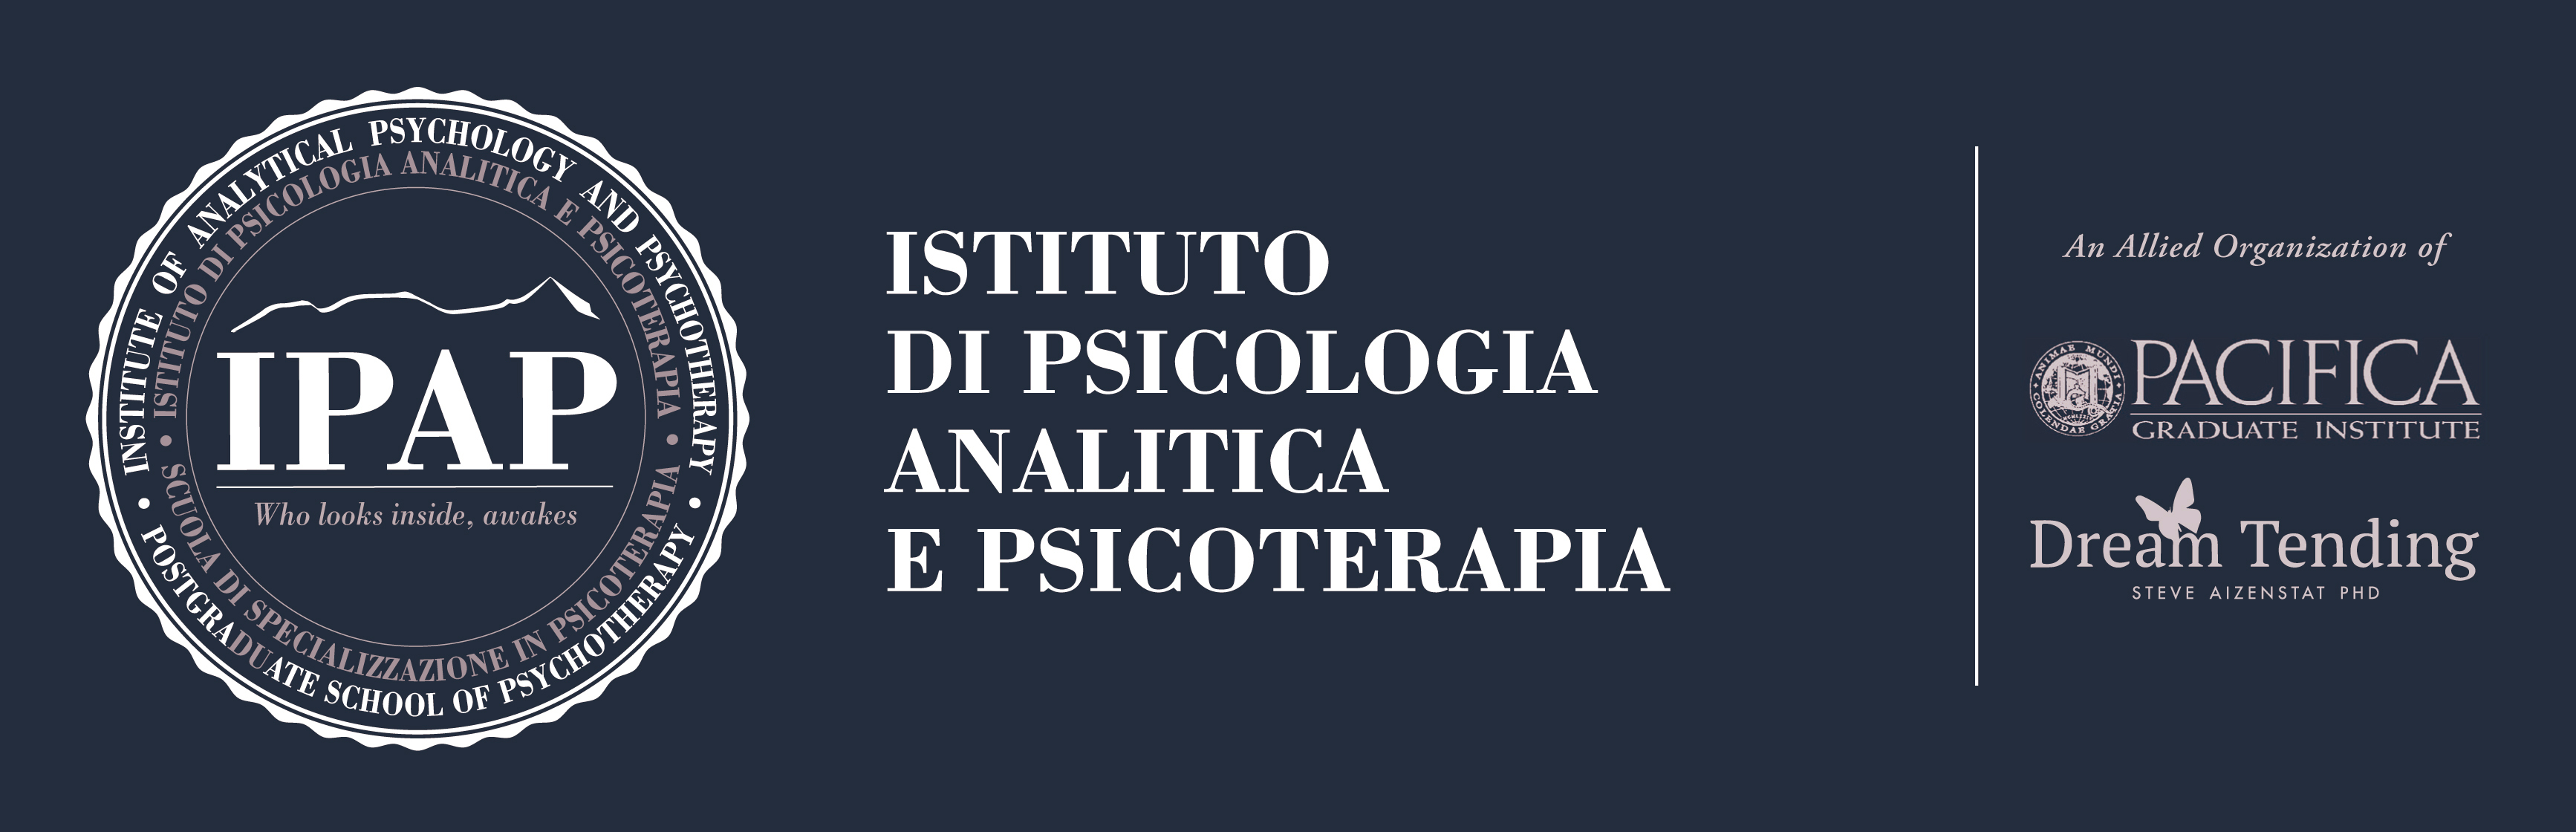 IPAP Istituto di Psicologia Analitica e Psicoterapia